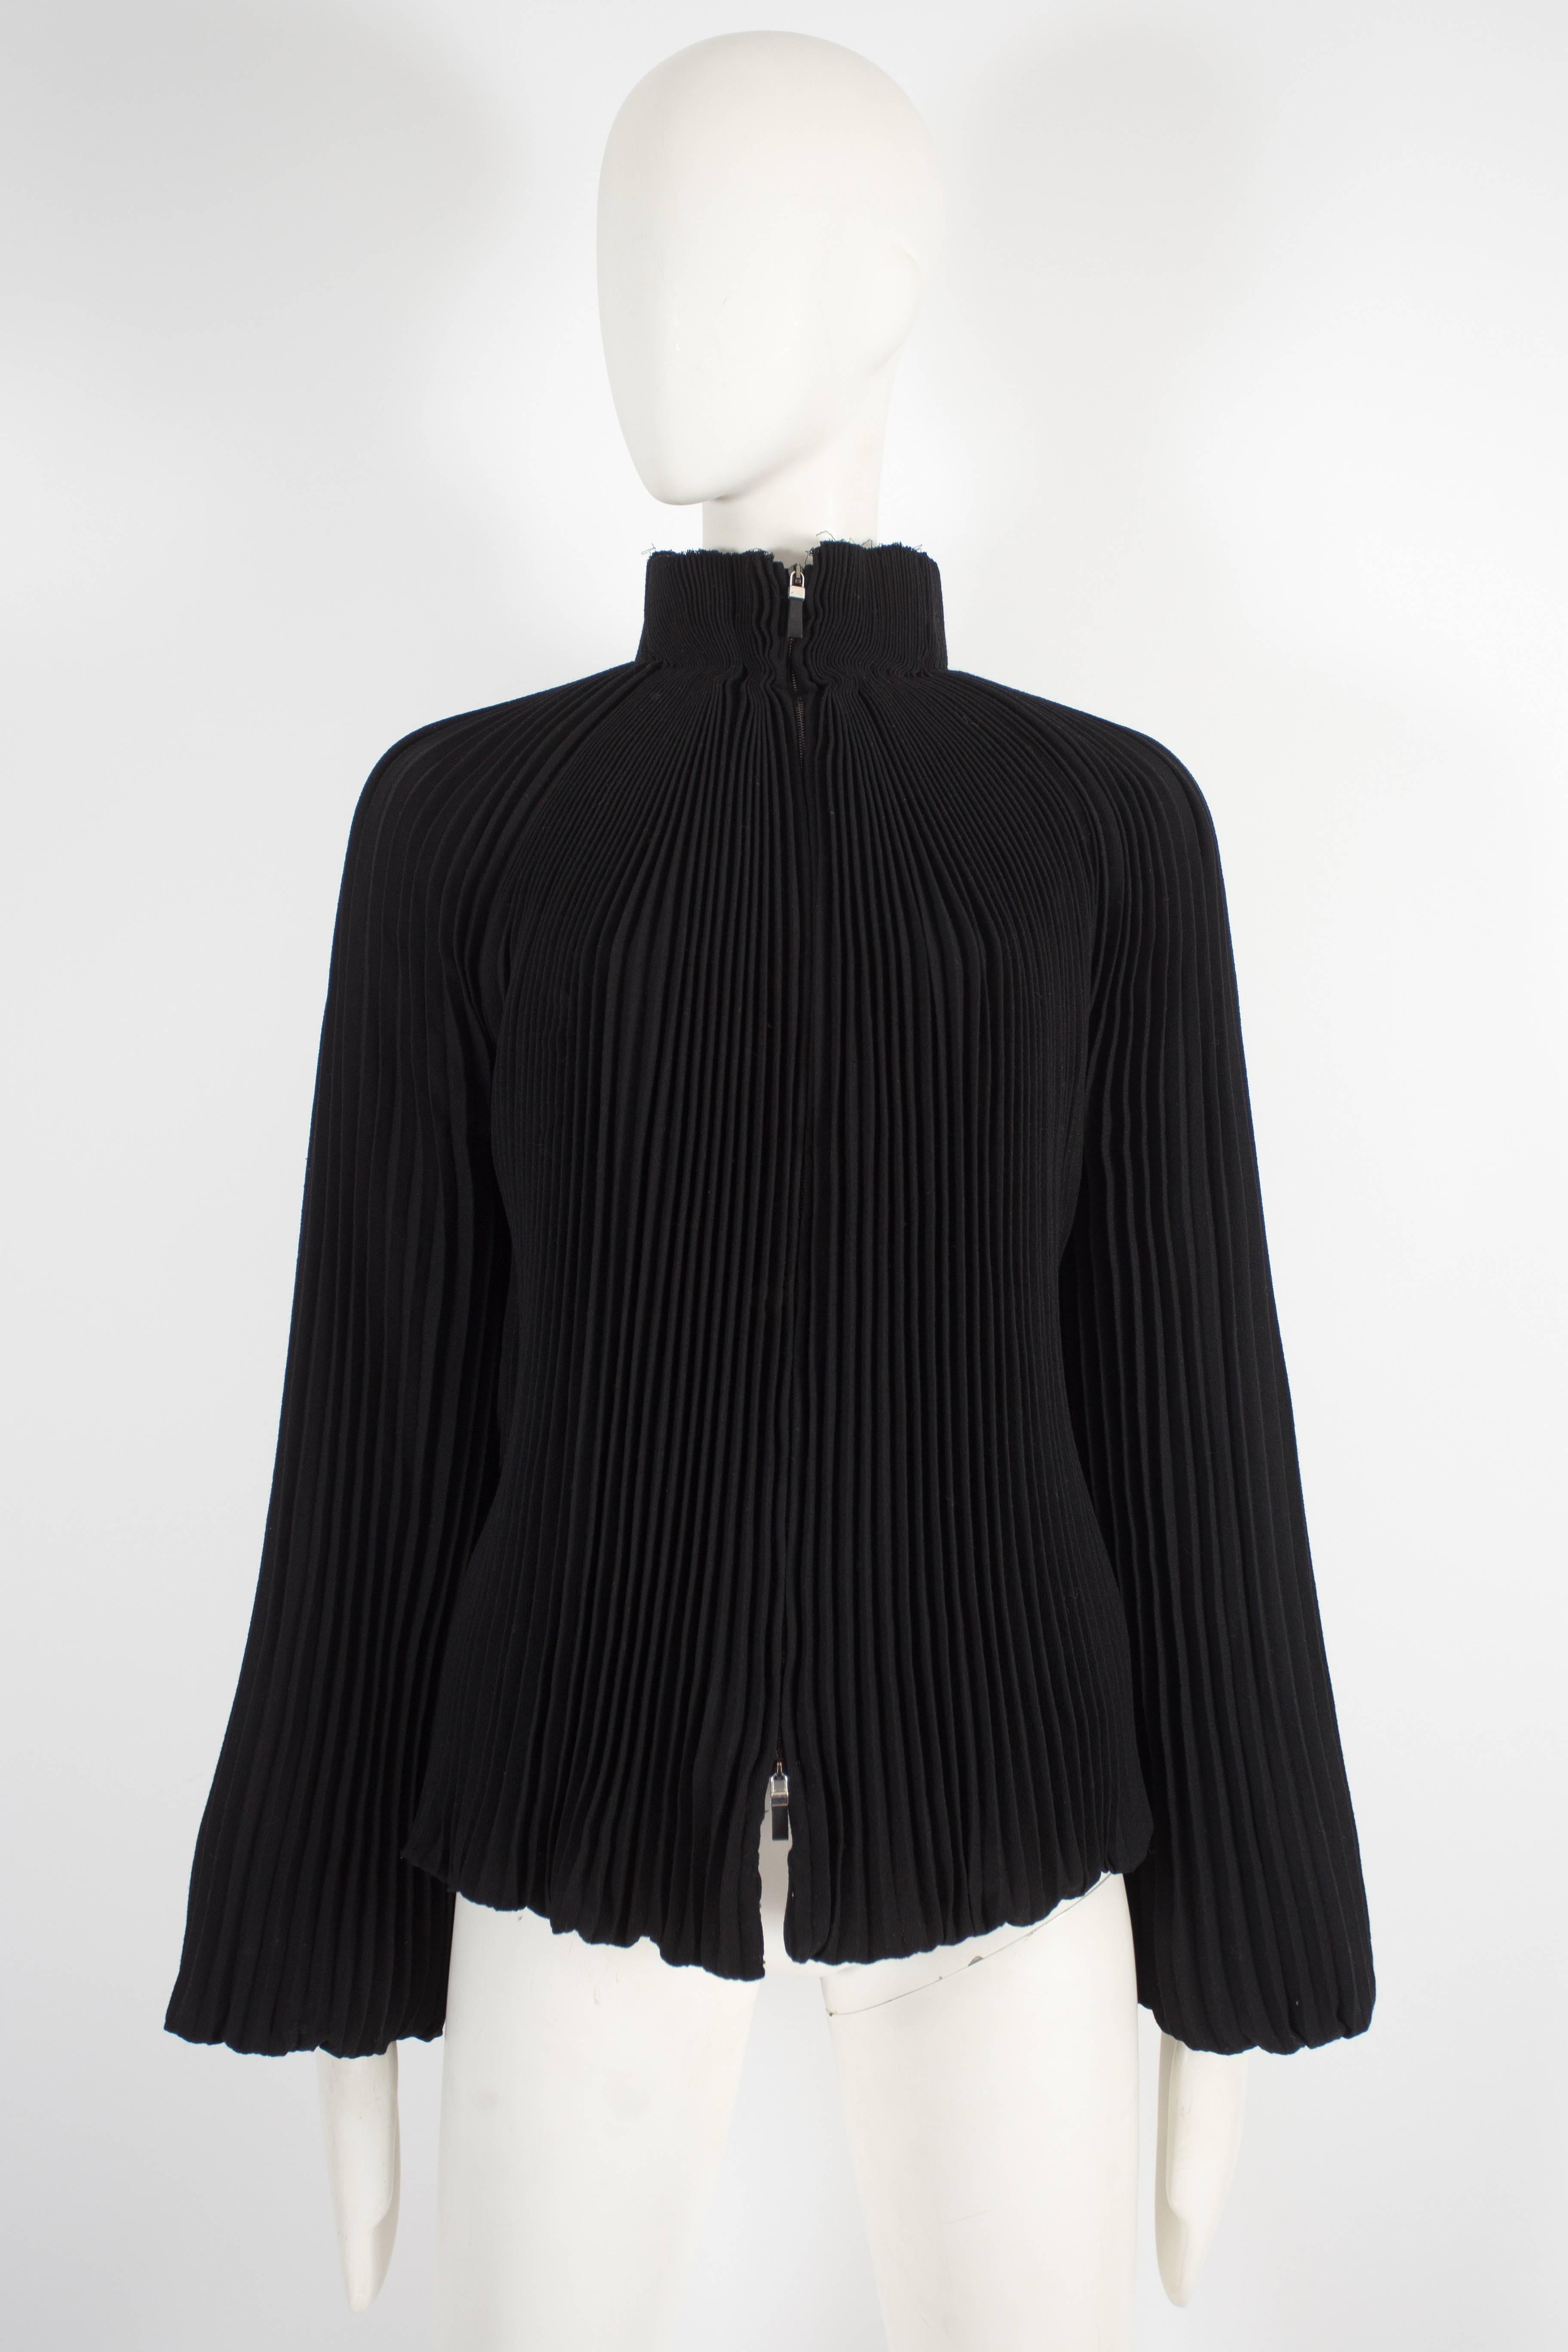 Wir präsentieren eine exquisite Alexander McQueen Abendjacke aus der Pre-Fall 2004 Kollektion. Diese Jacke ist ein wahres Meisterwerk, das die charakteristische Handwerkskunst und das Design der Marke unterstreicht.

Die Jacke aus schwarzem